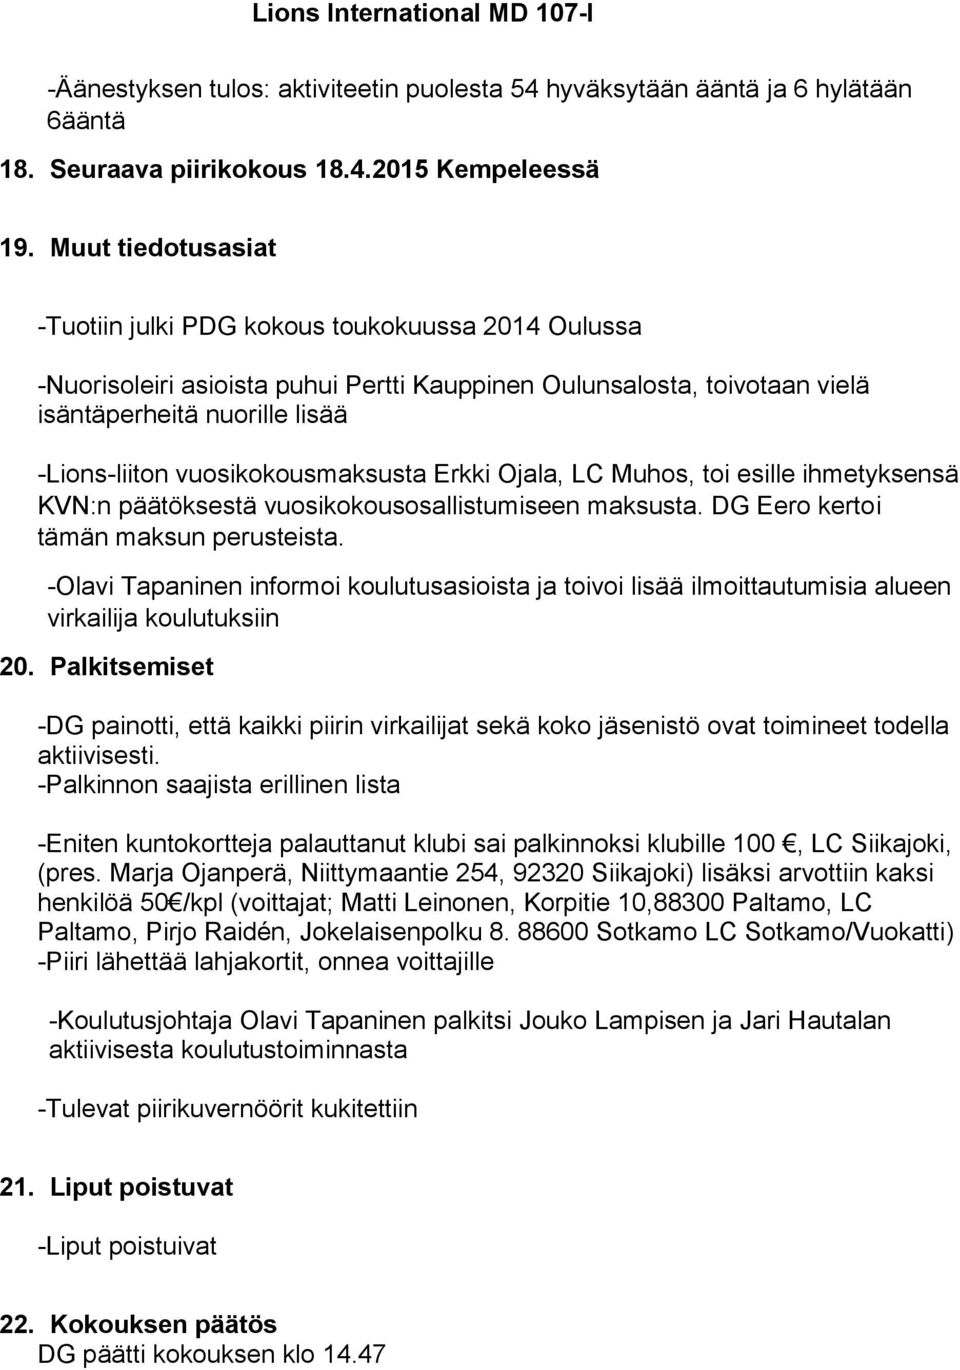 vuosikokousmaksusta Erkki Ojala, LC Muhos, toi esille ihmetyksensä KVN:n päätöksestä vuosikokousosallistumiseen maksusta. DG Eero kertoi tämän maksun perusteista.